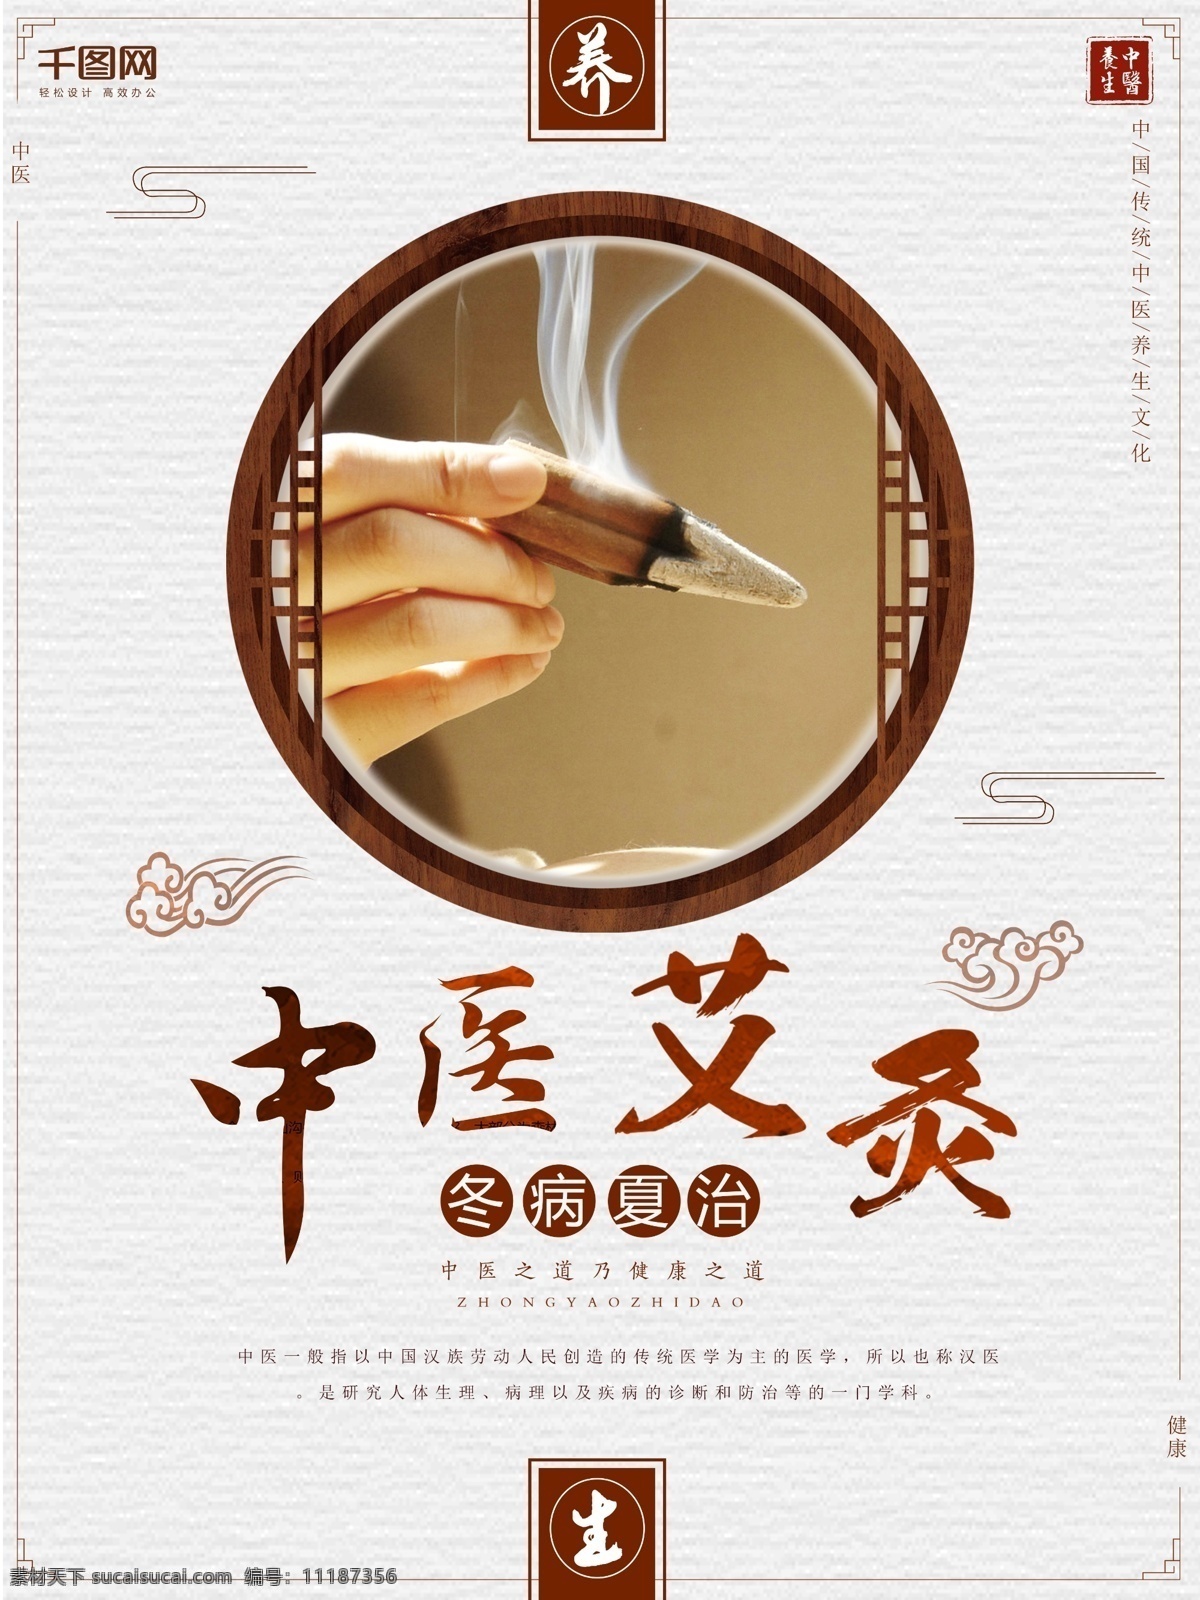 中医 艾灸 养生 宣传海报 医疗 冬病夏治 中华文化 传统文化 商业海报